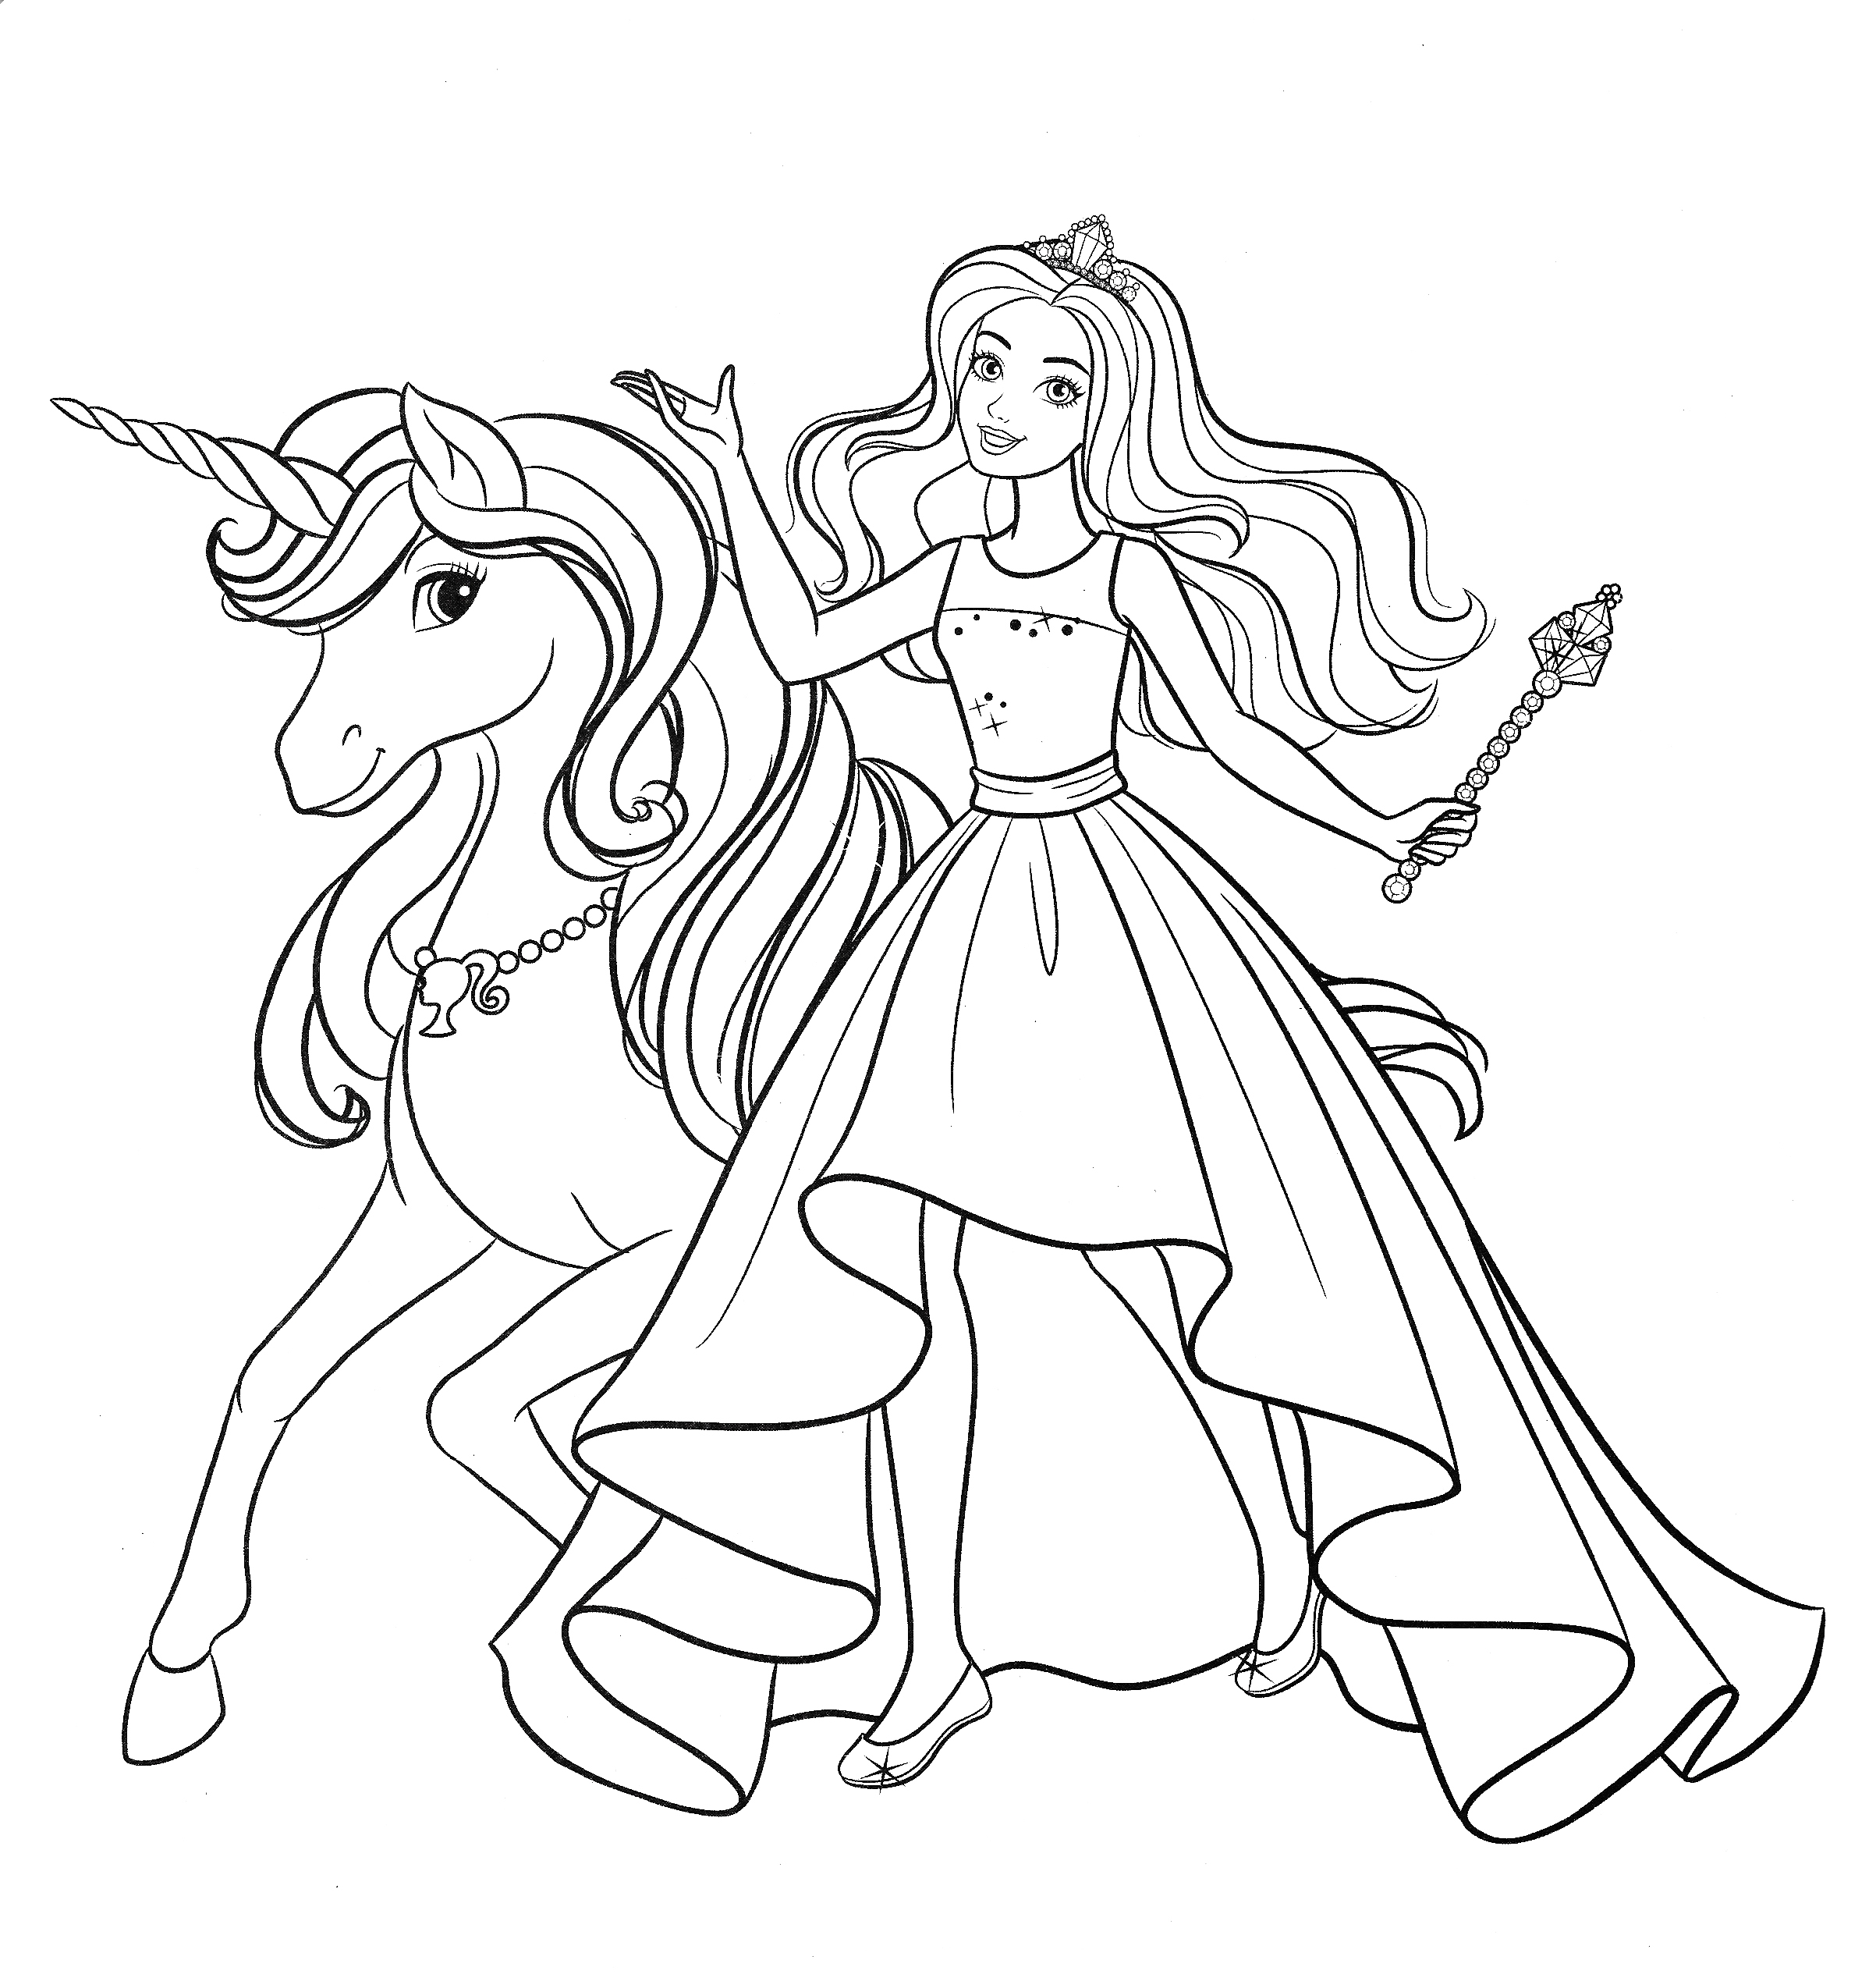 Раскраски Раскраска Принцессы и лошадь , скачать распечатать раскраски.